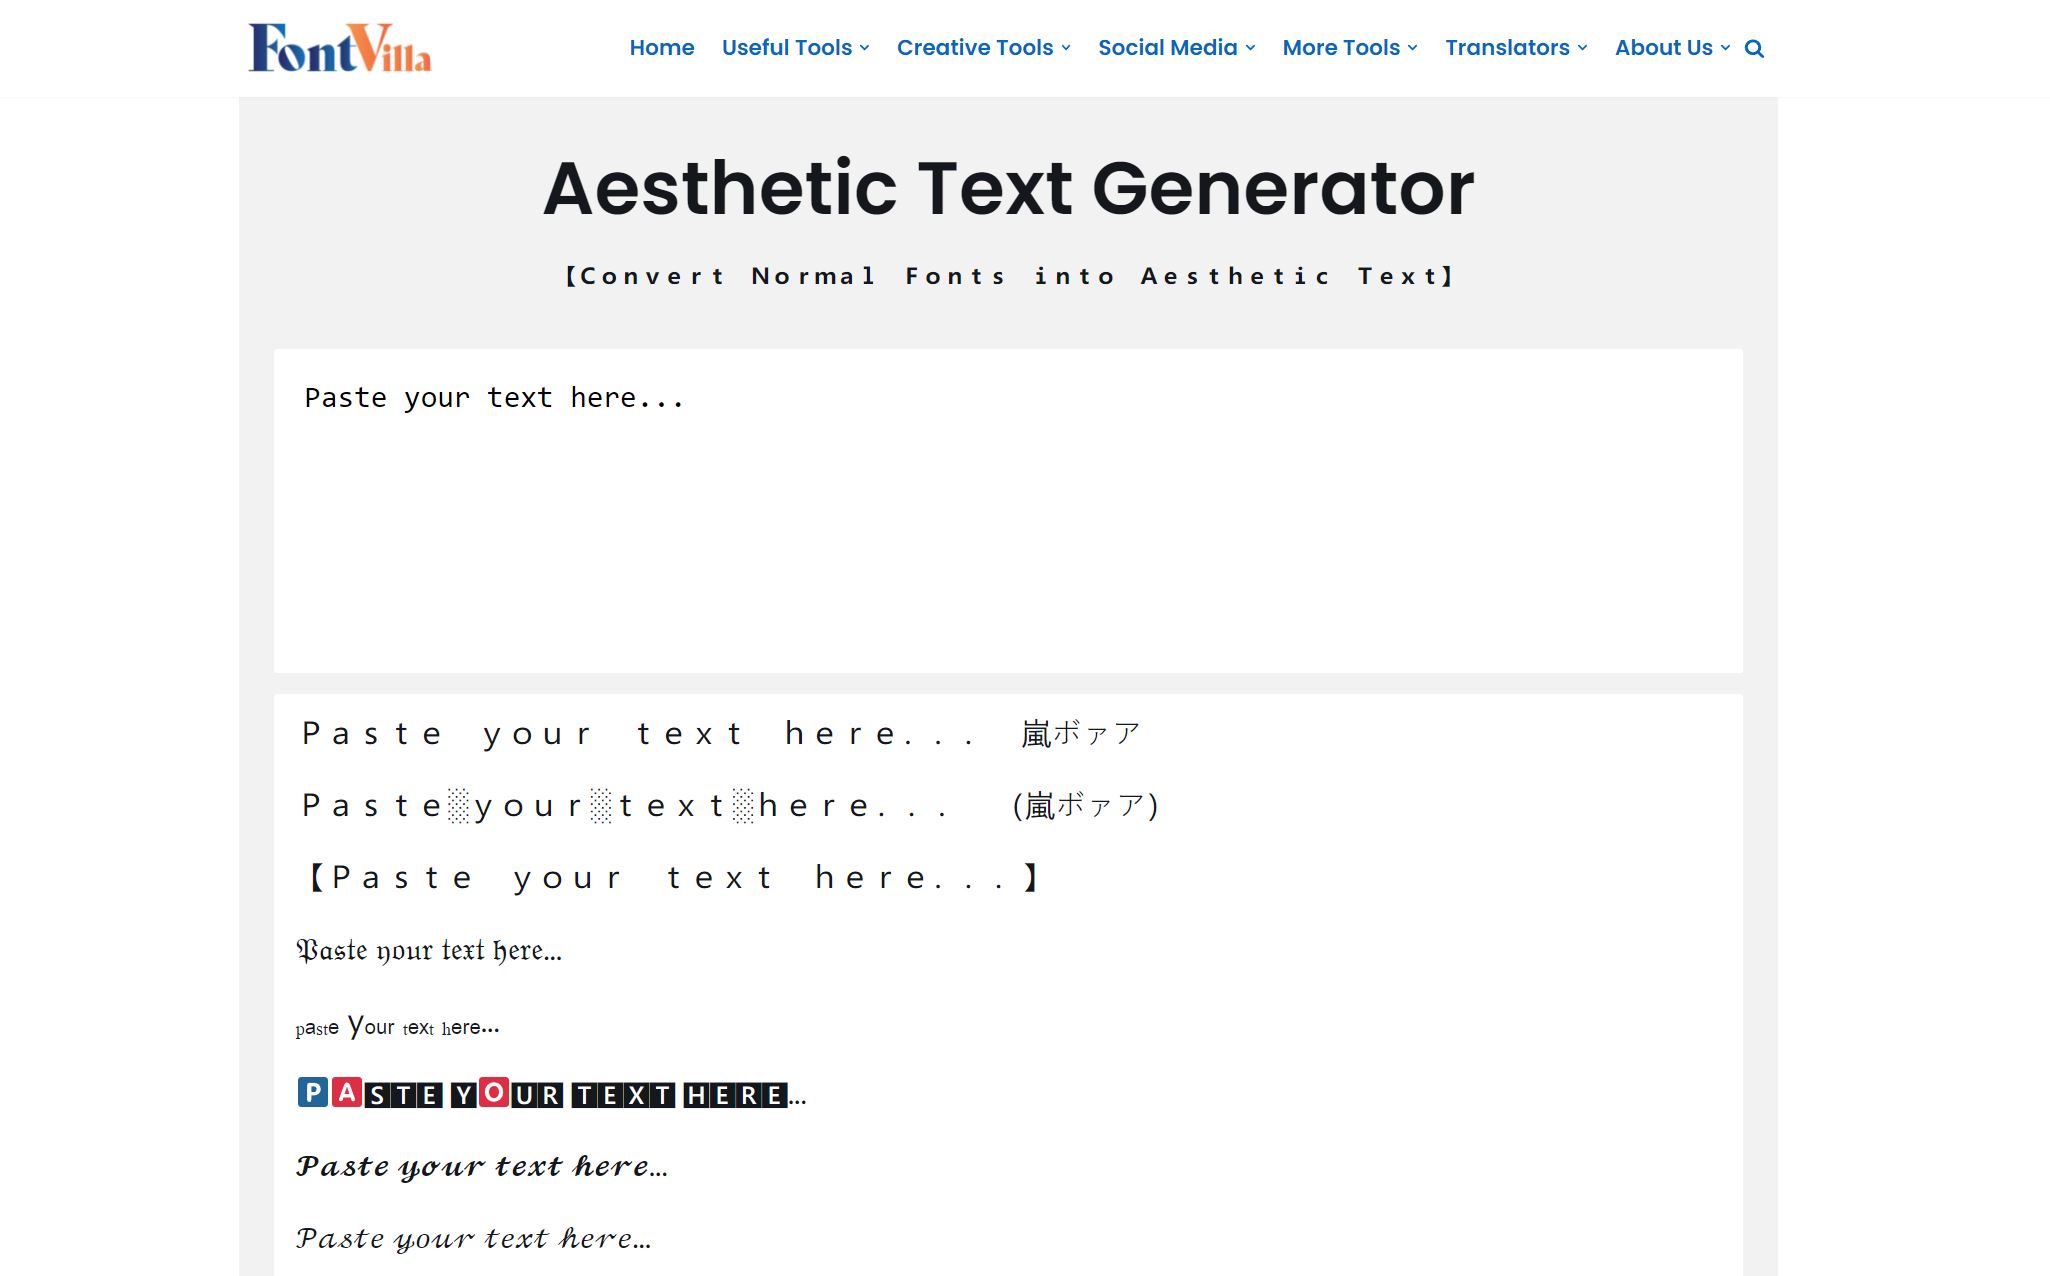 Aesthetic Text Generator